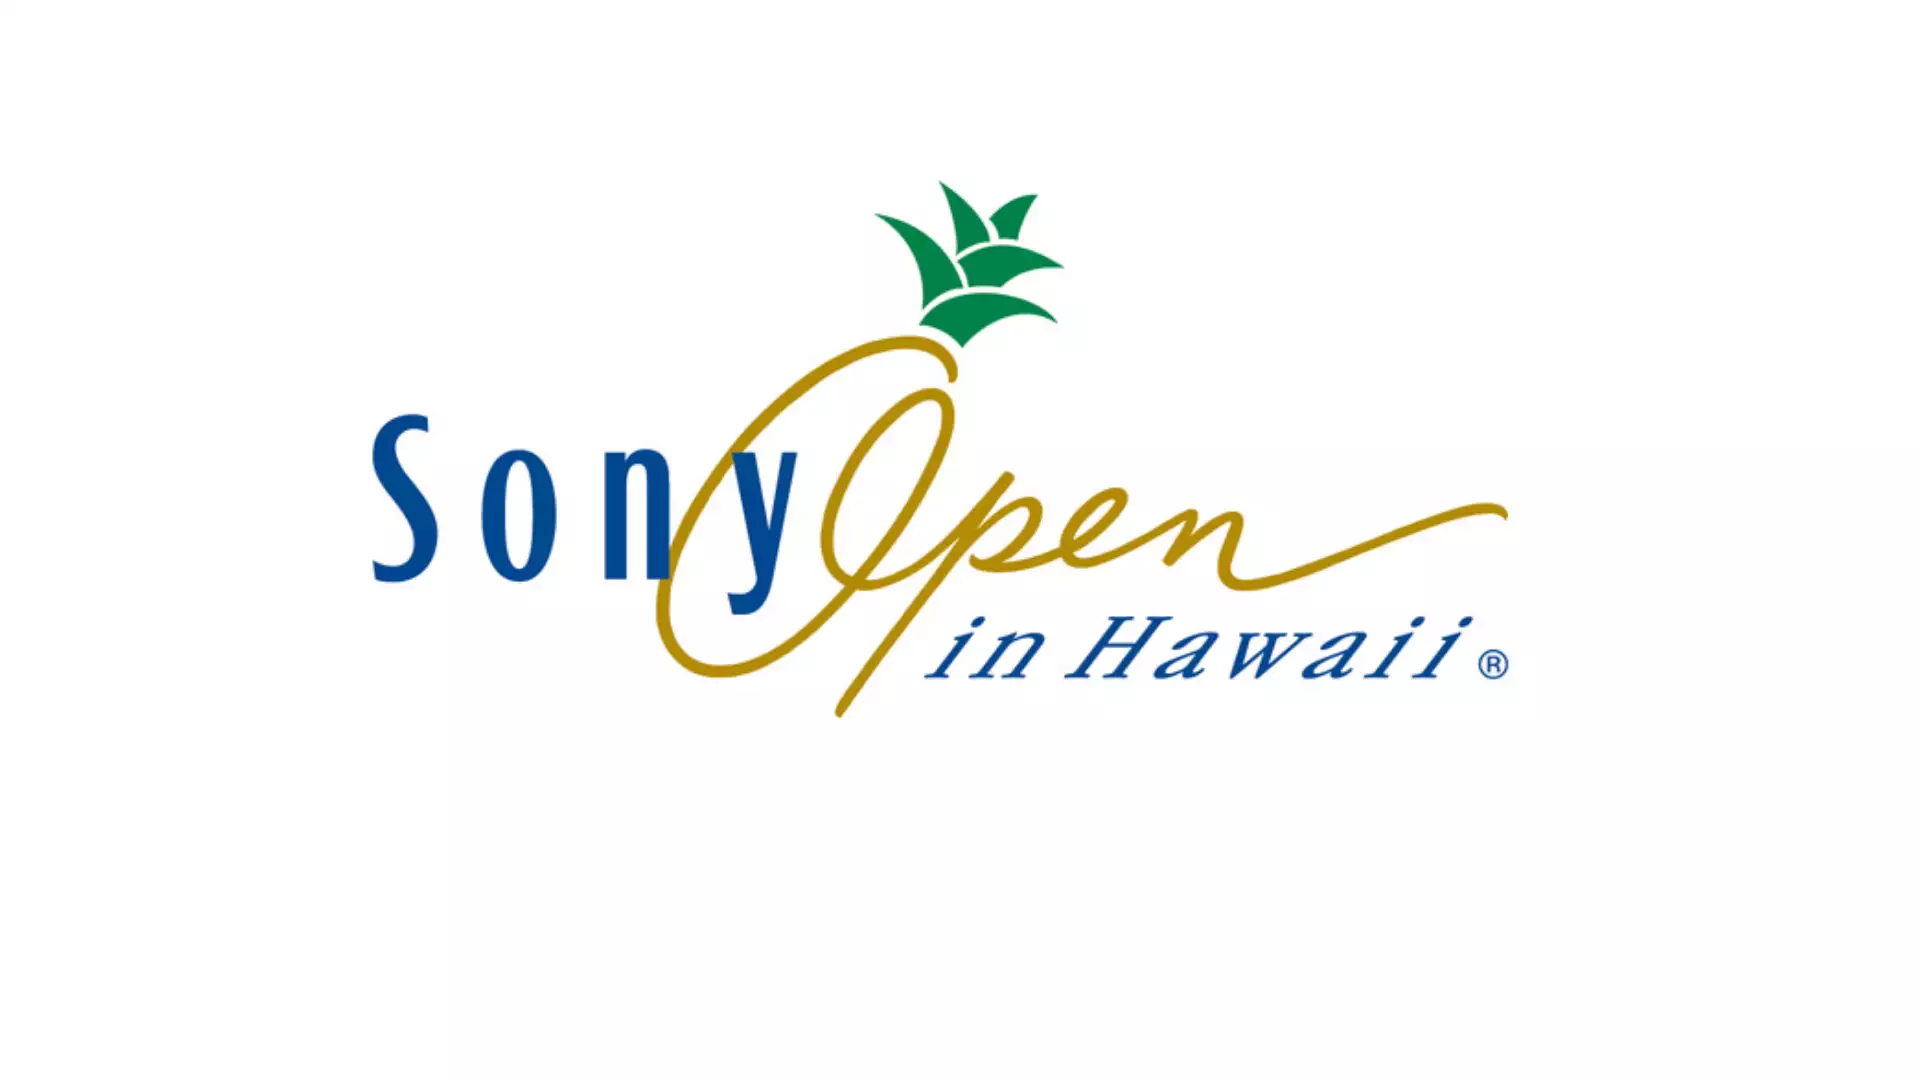 ソニーオープン in ハワイ